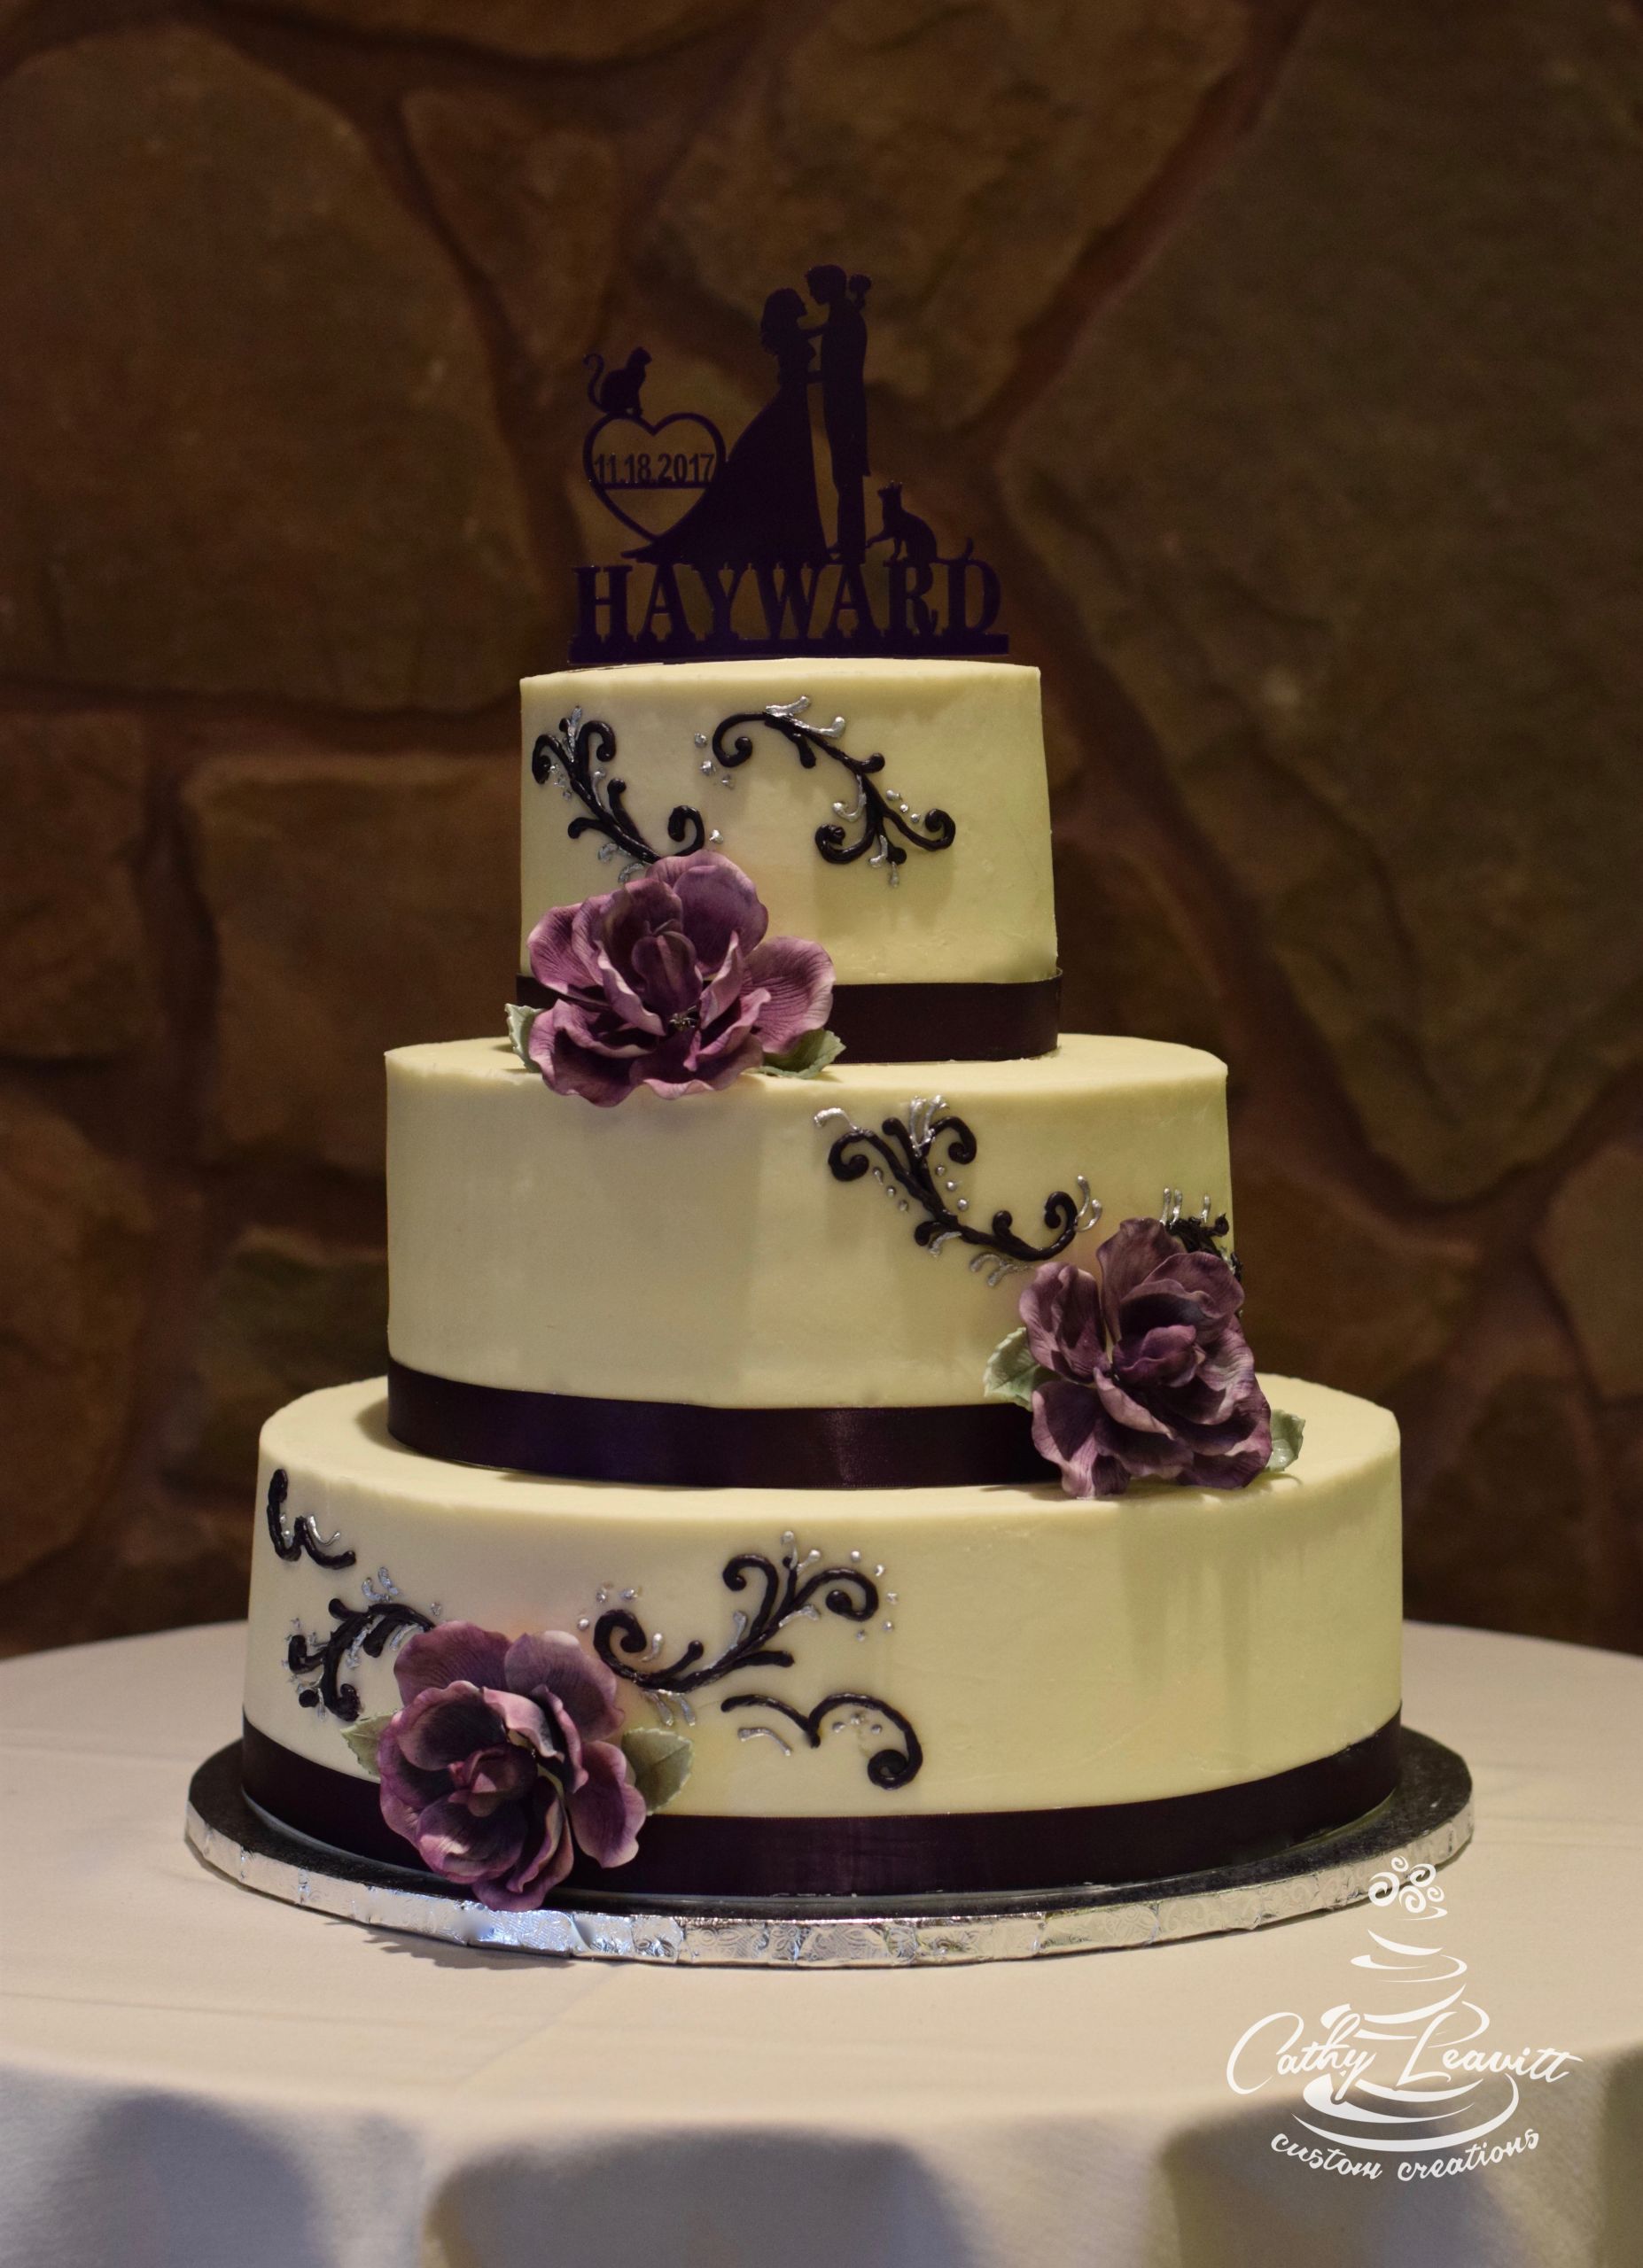 Wedding Cakes Colorado Springs
 Colorado Springs wedding cakes by Cathy Leavitt custom